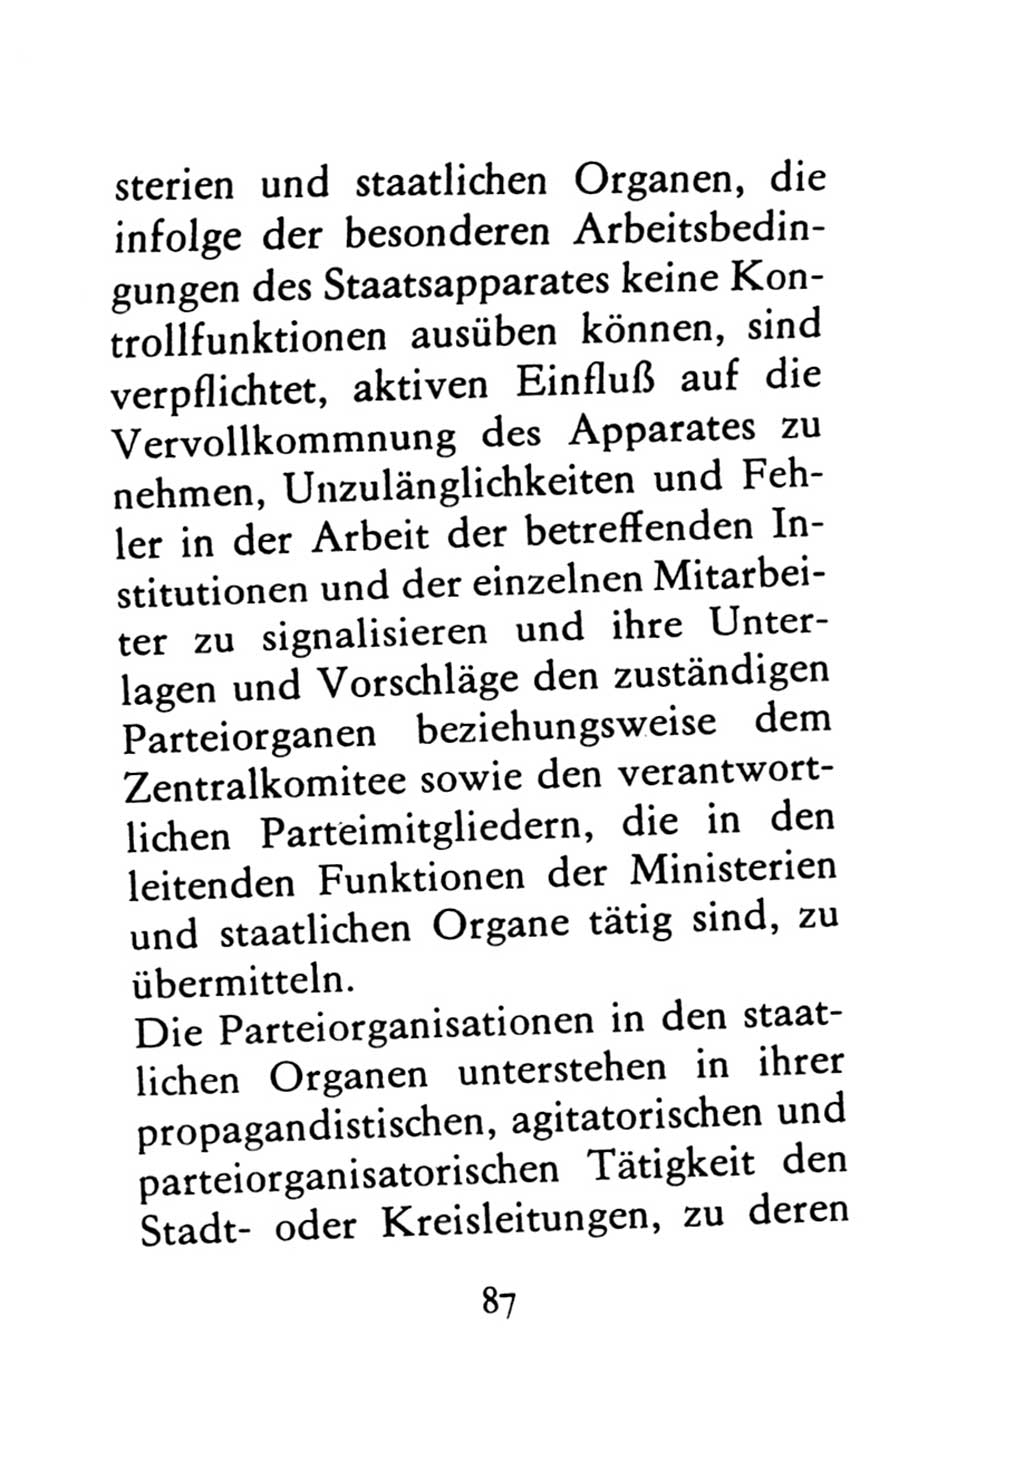 Statut der Sozialistischen Einheitspartei Deutschlands (SED) 1971, Seite 87 (St. SED DDR 1971, S. 87)